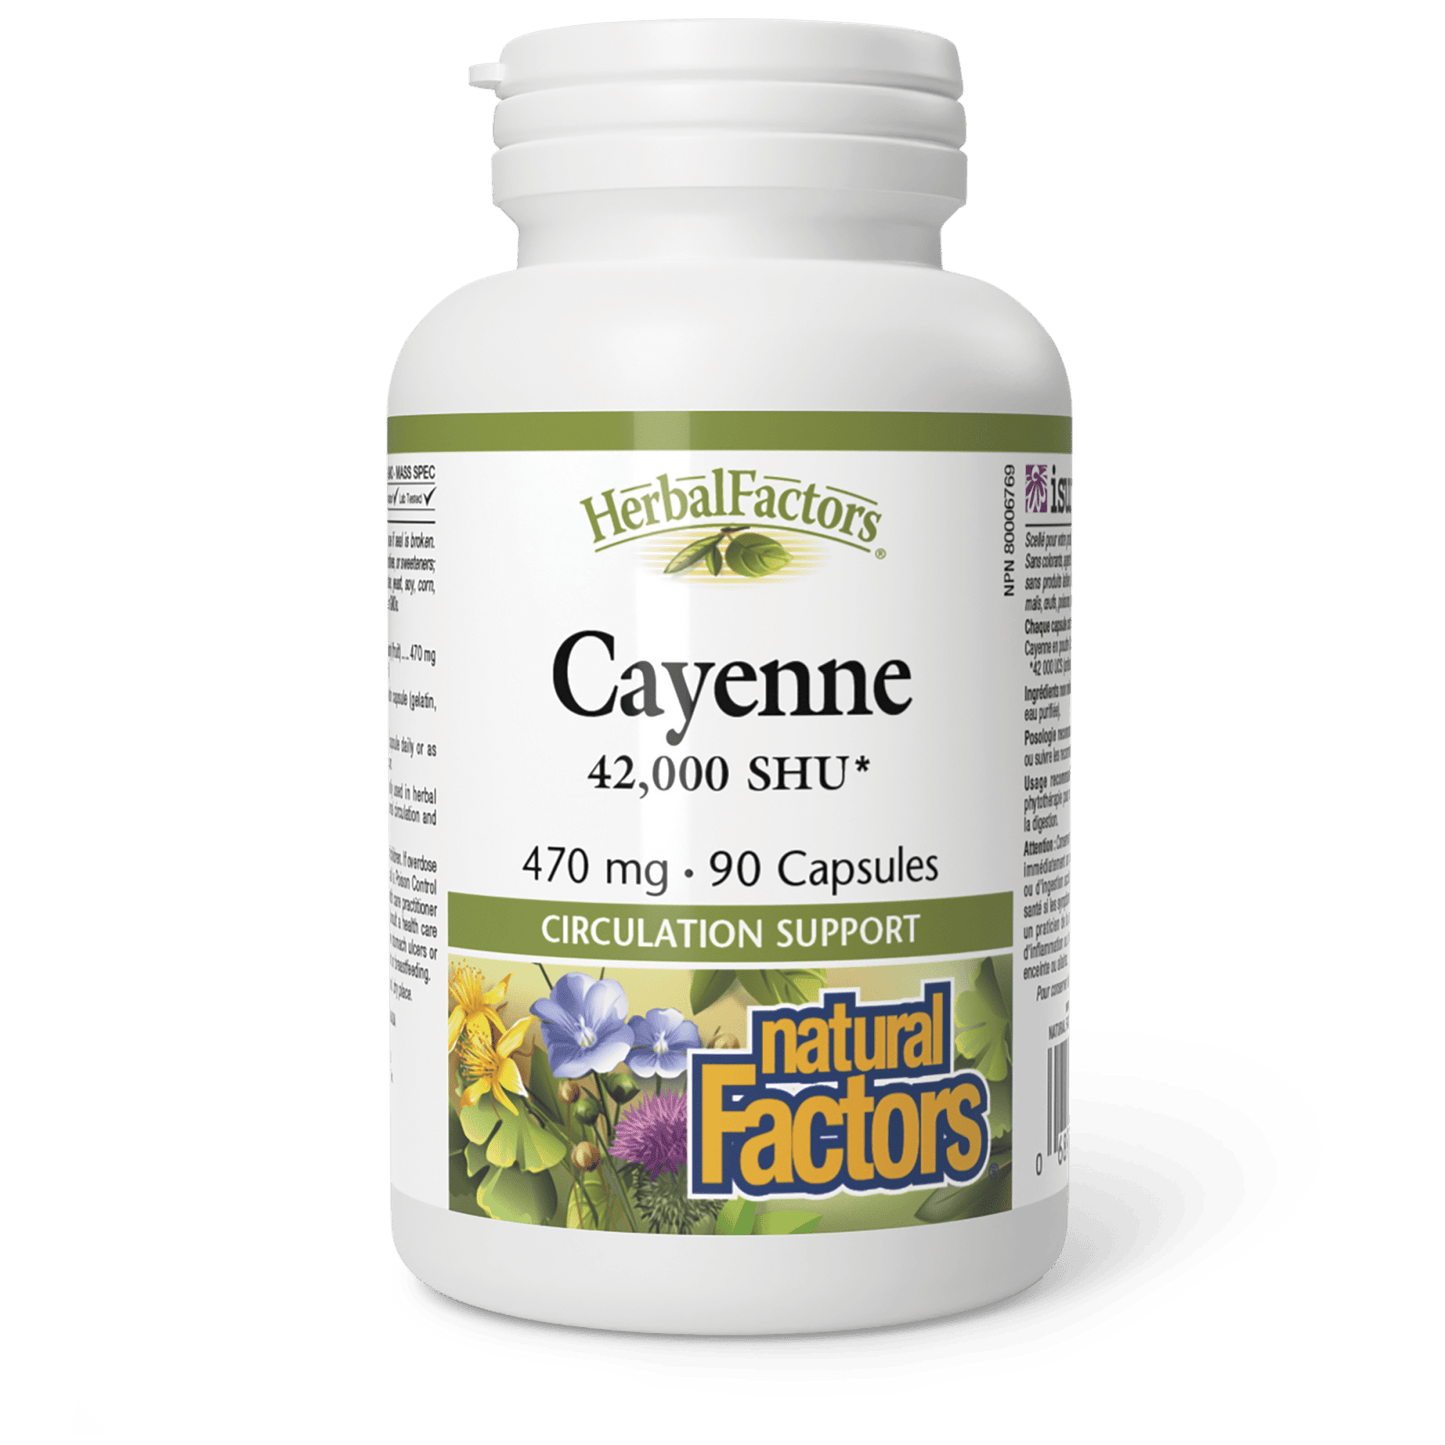 Cayenne 470 mg, HerbalFactors, Natural Factors|v|image|4210